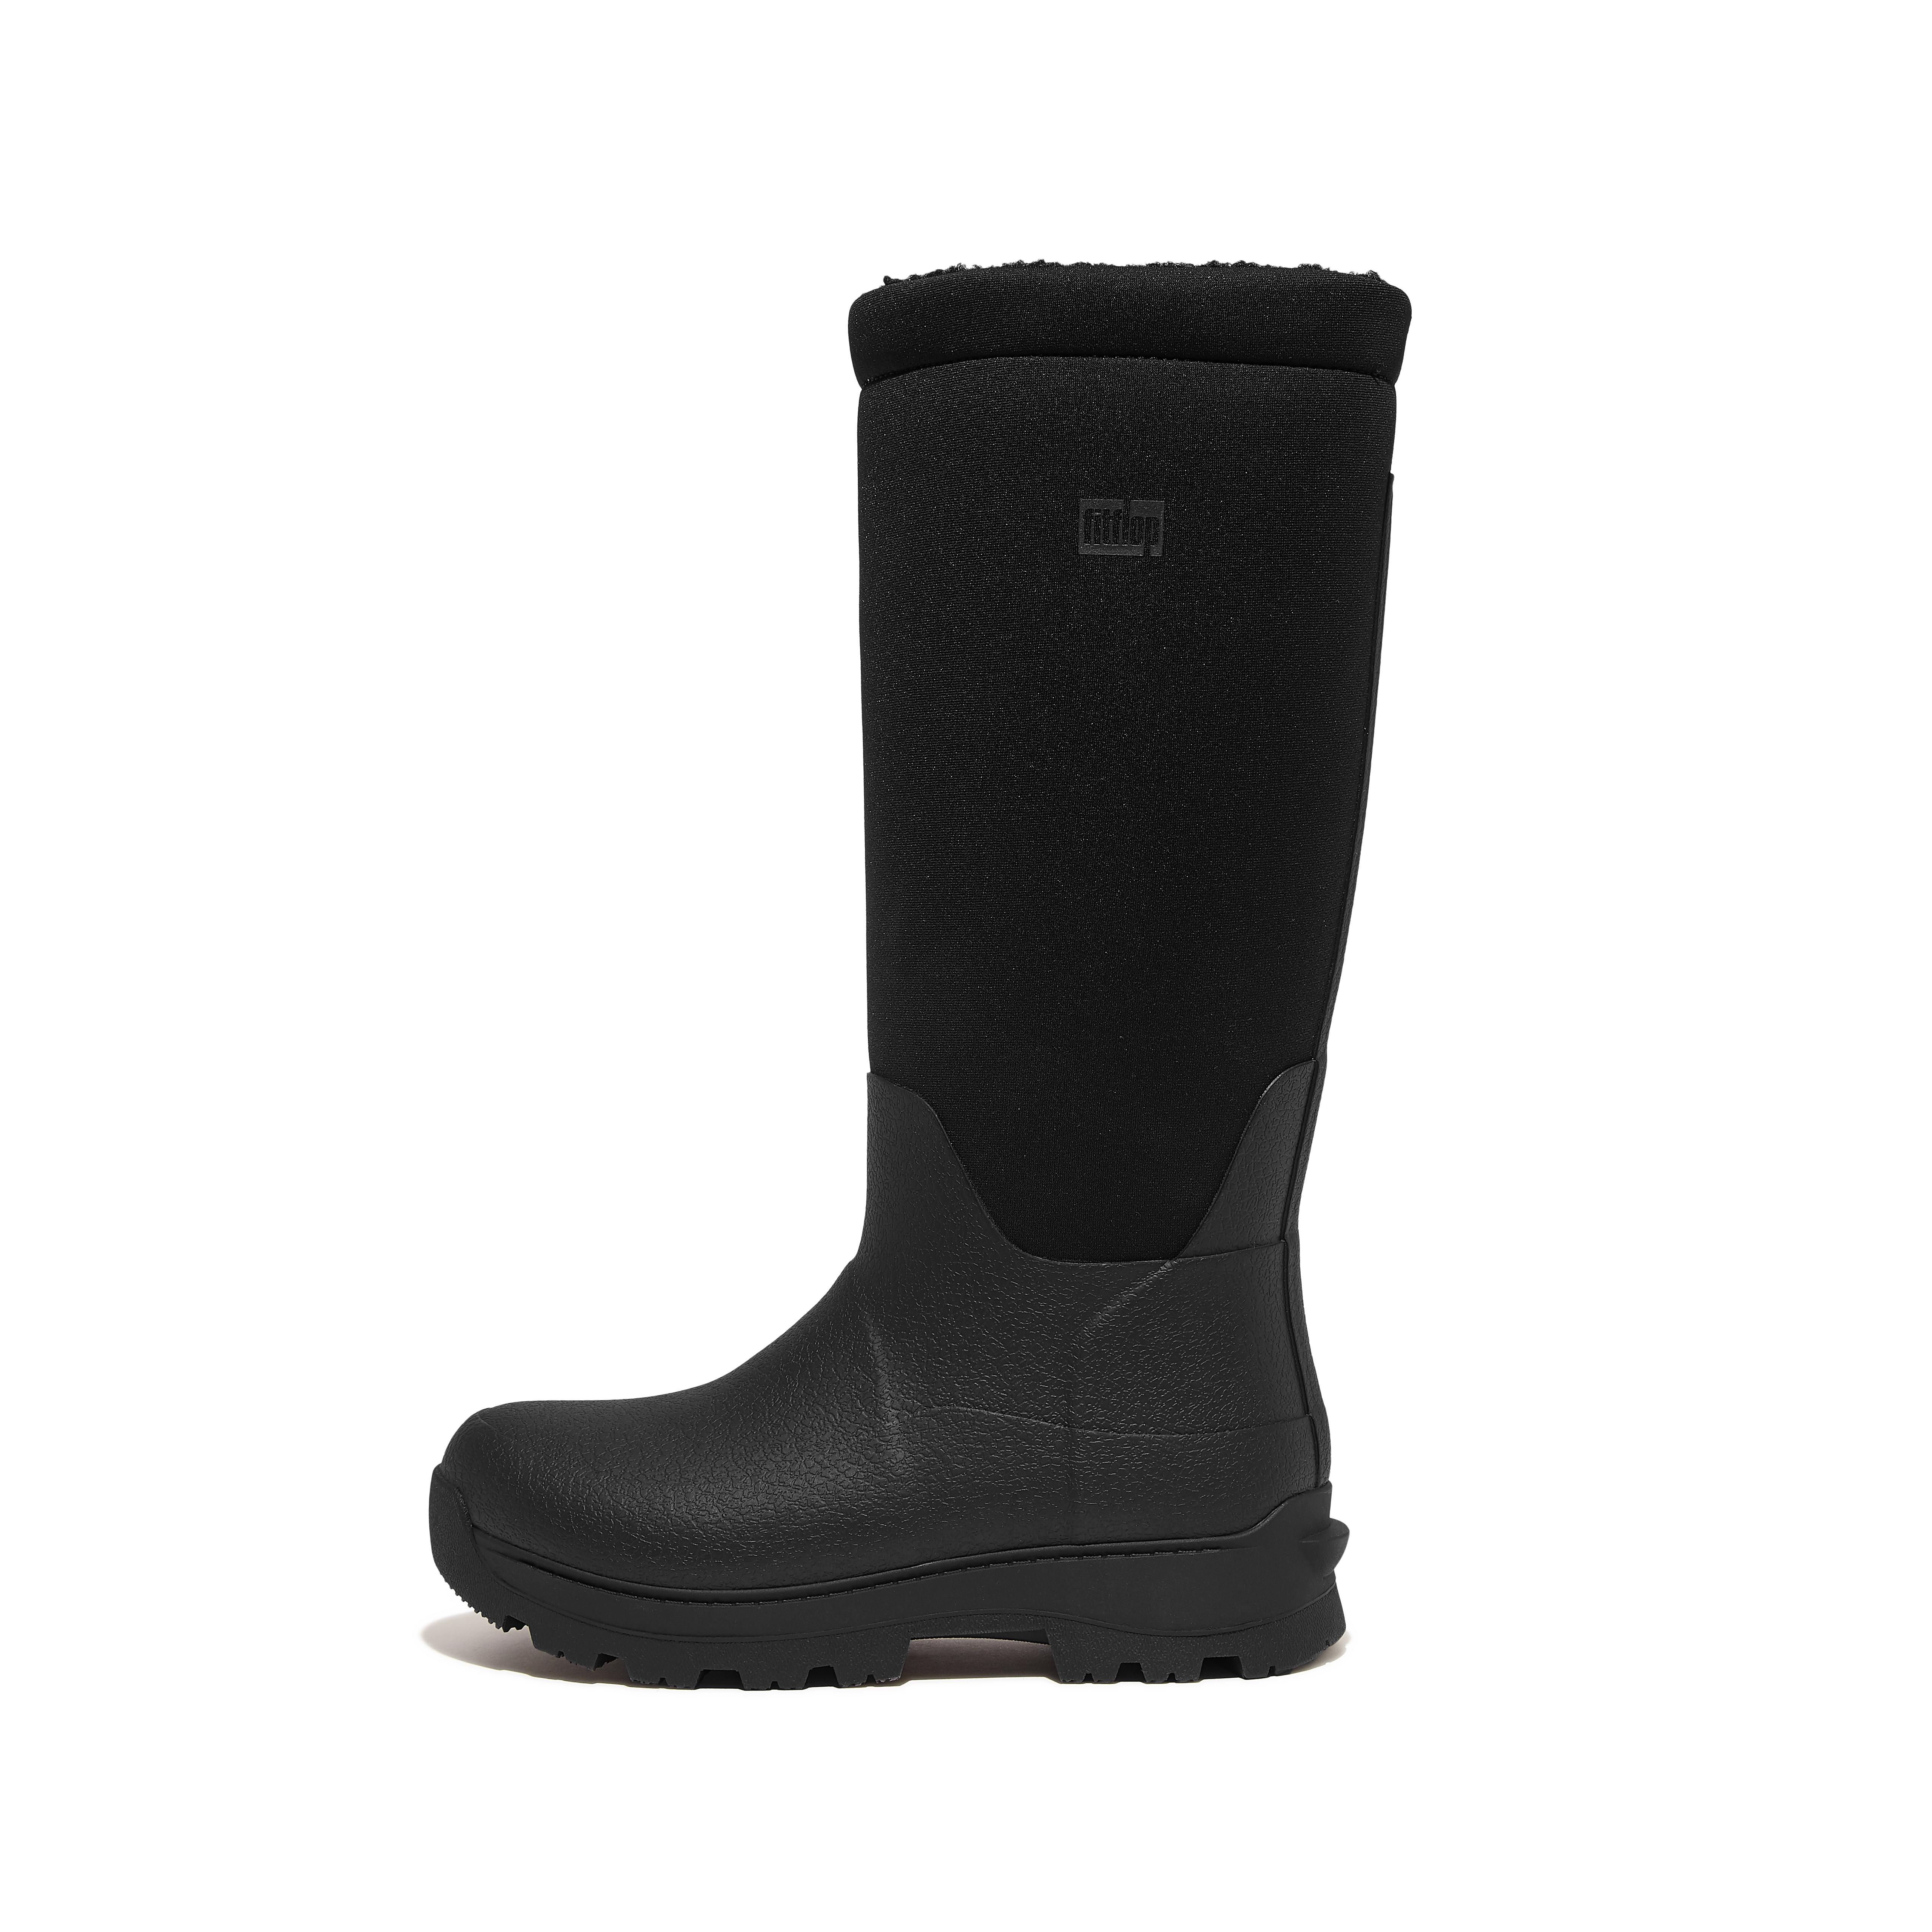 핏플랍 Fitflop High-Performance Fleece-Lined Roll-Down Wellington Boots,Black